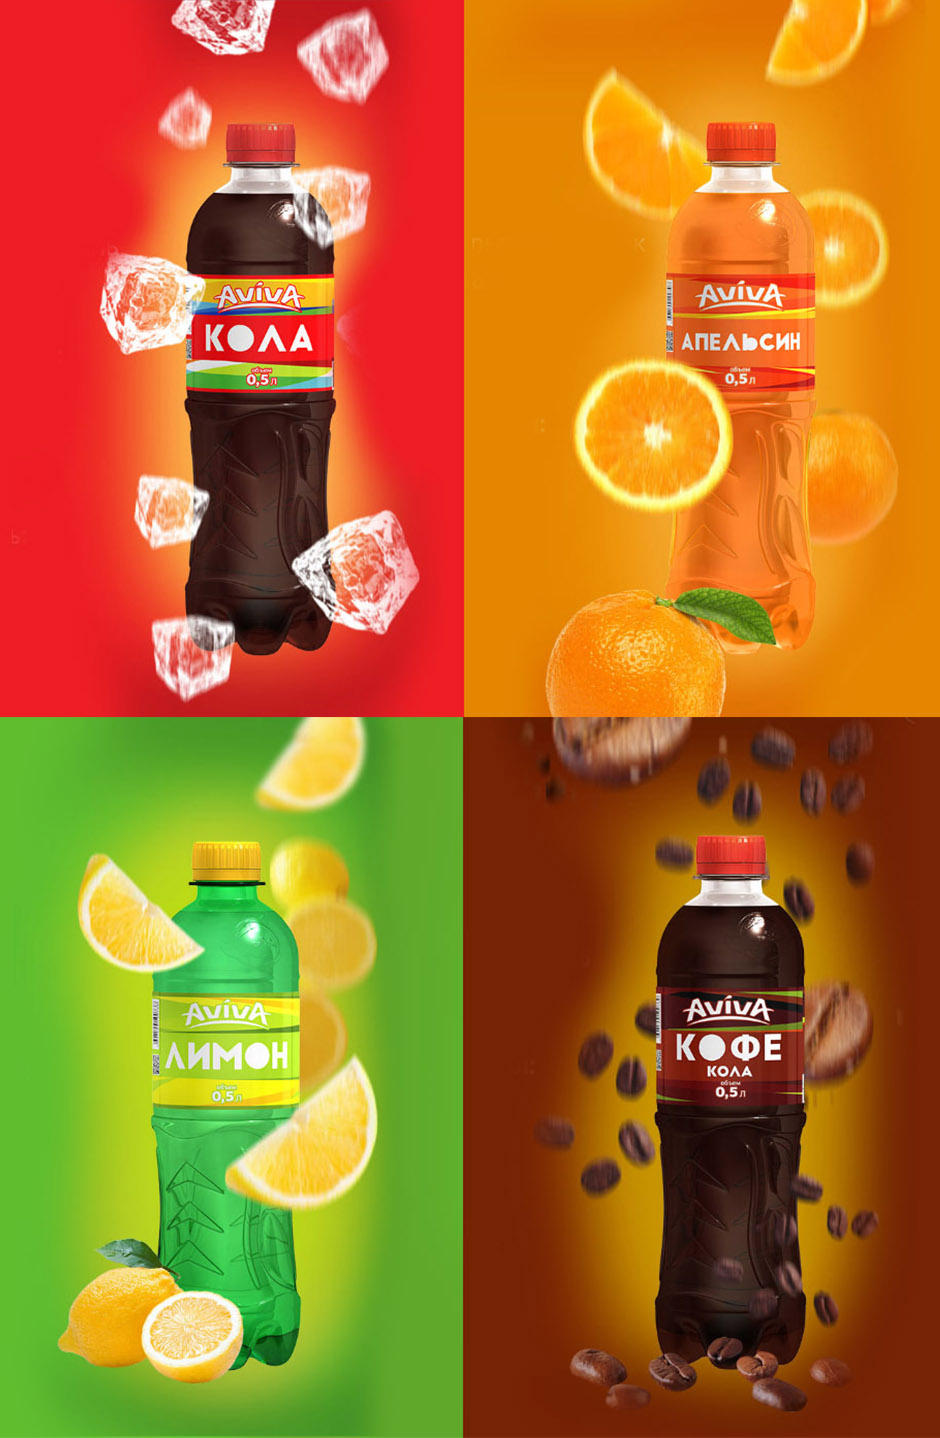 Soda label design, design этикетки для лимонада